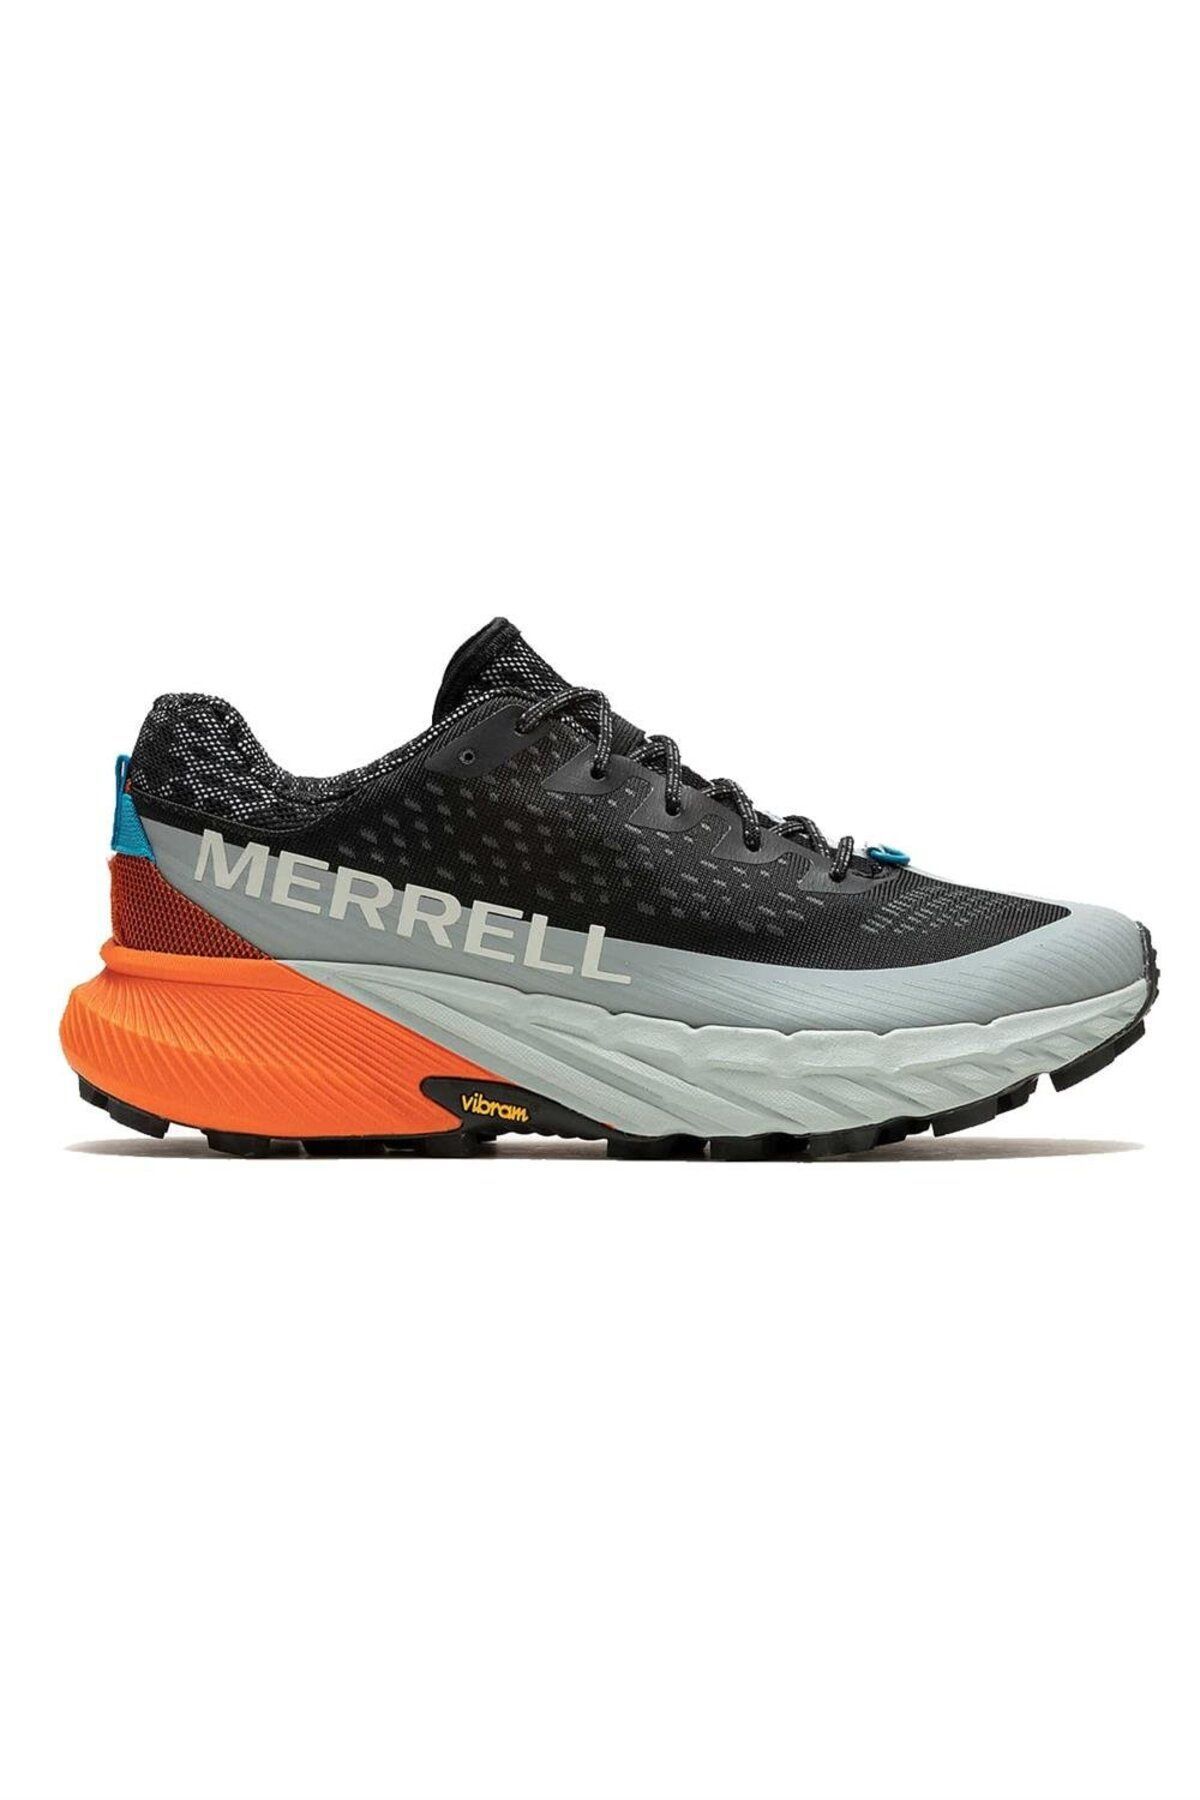 Merrell Agılıty Peak 5 Erkek Patika Koşu Ayakkabısı J068051